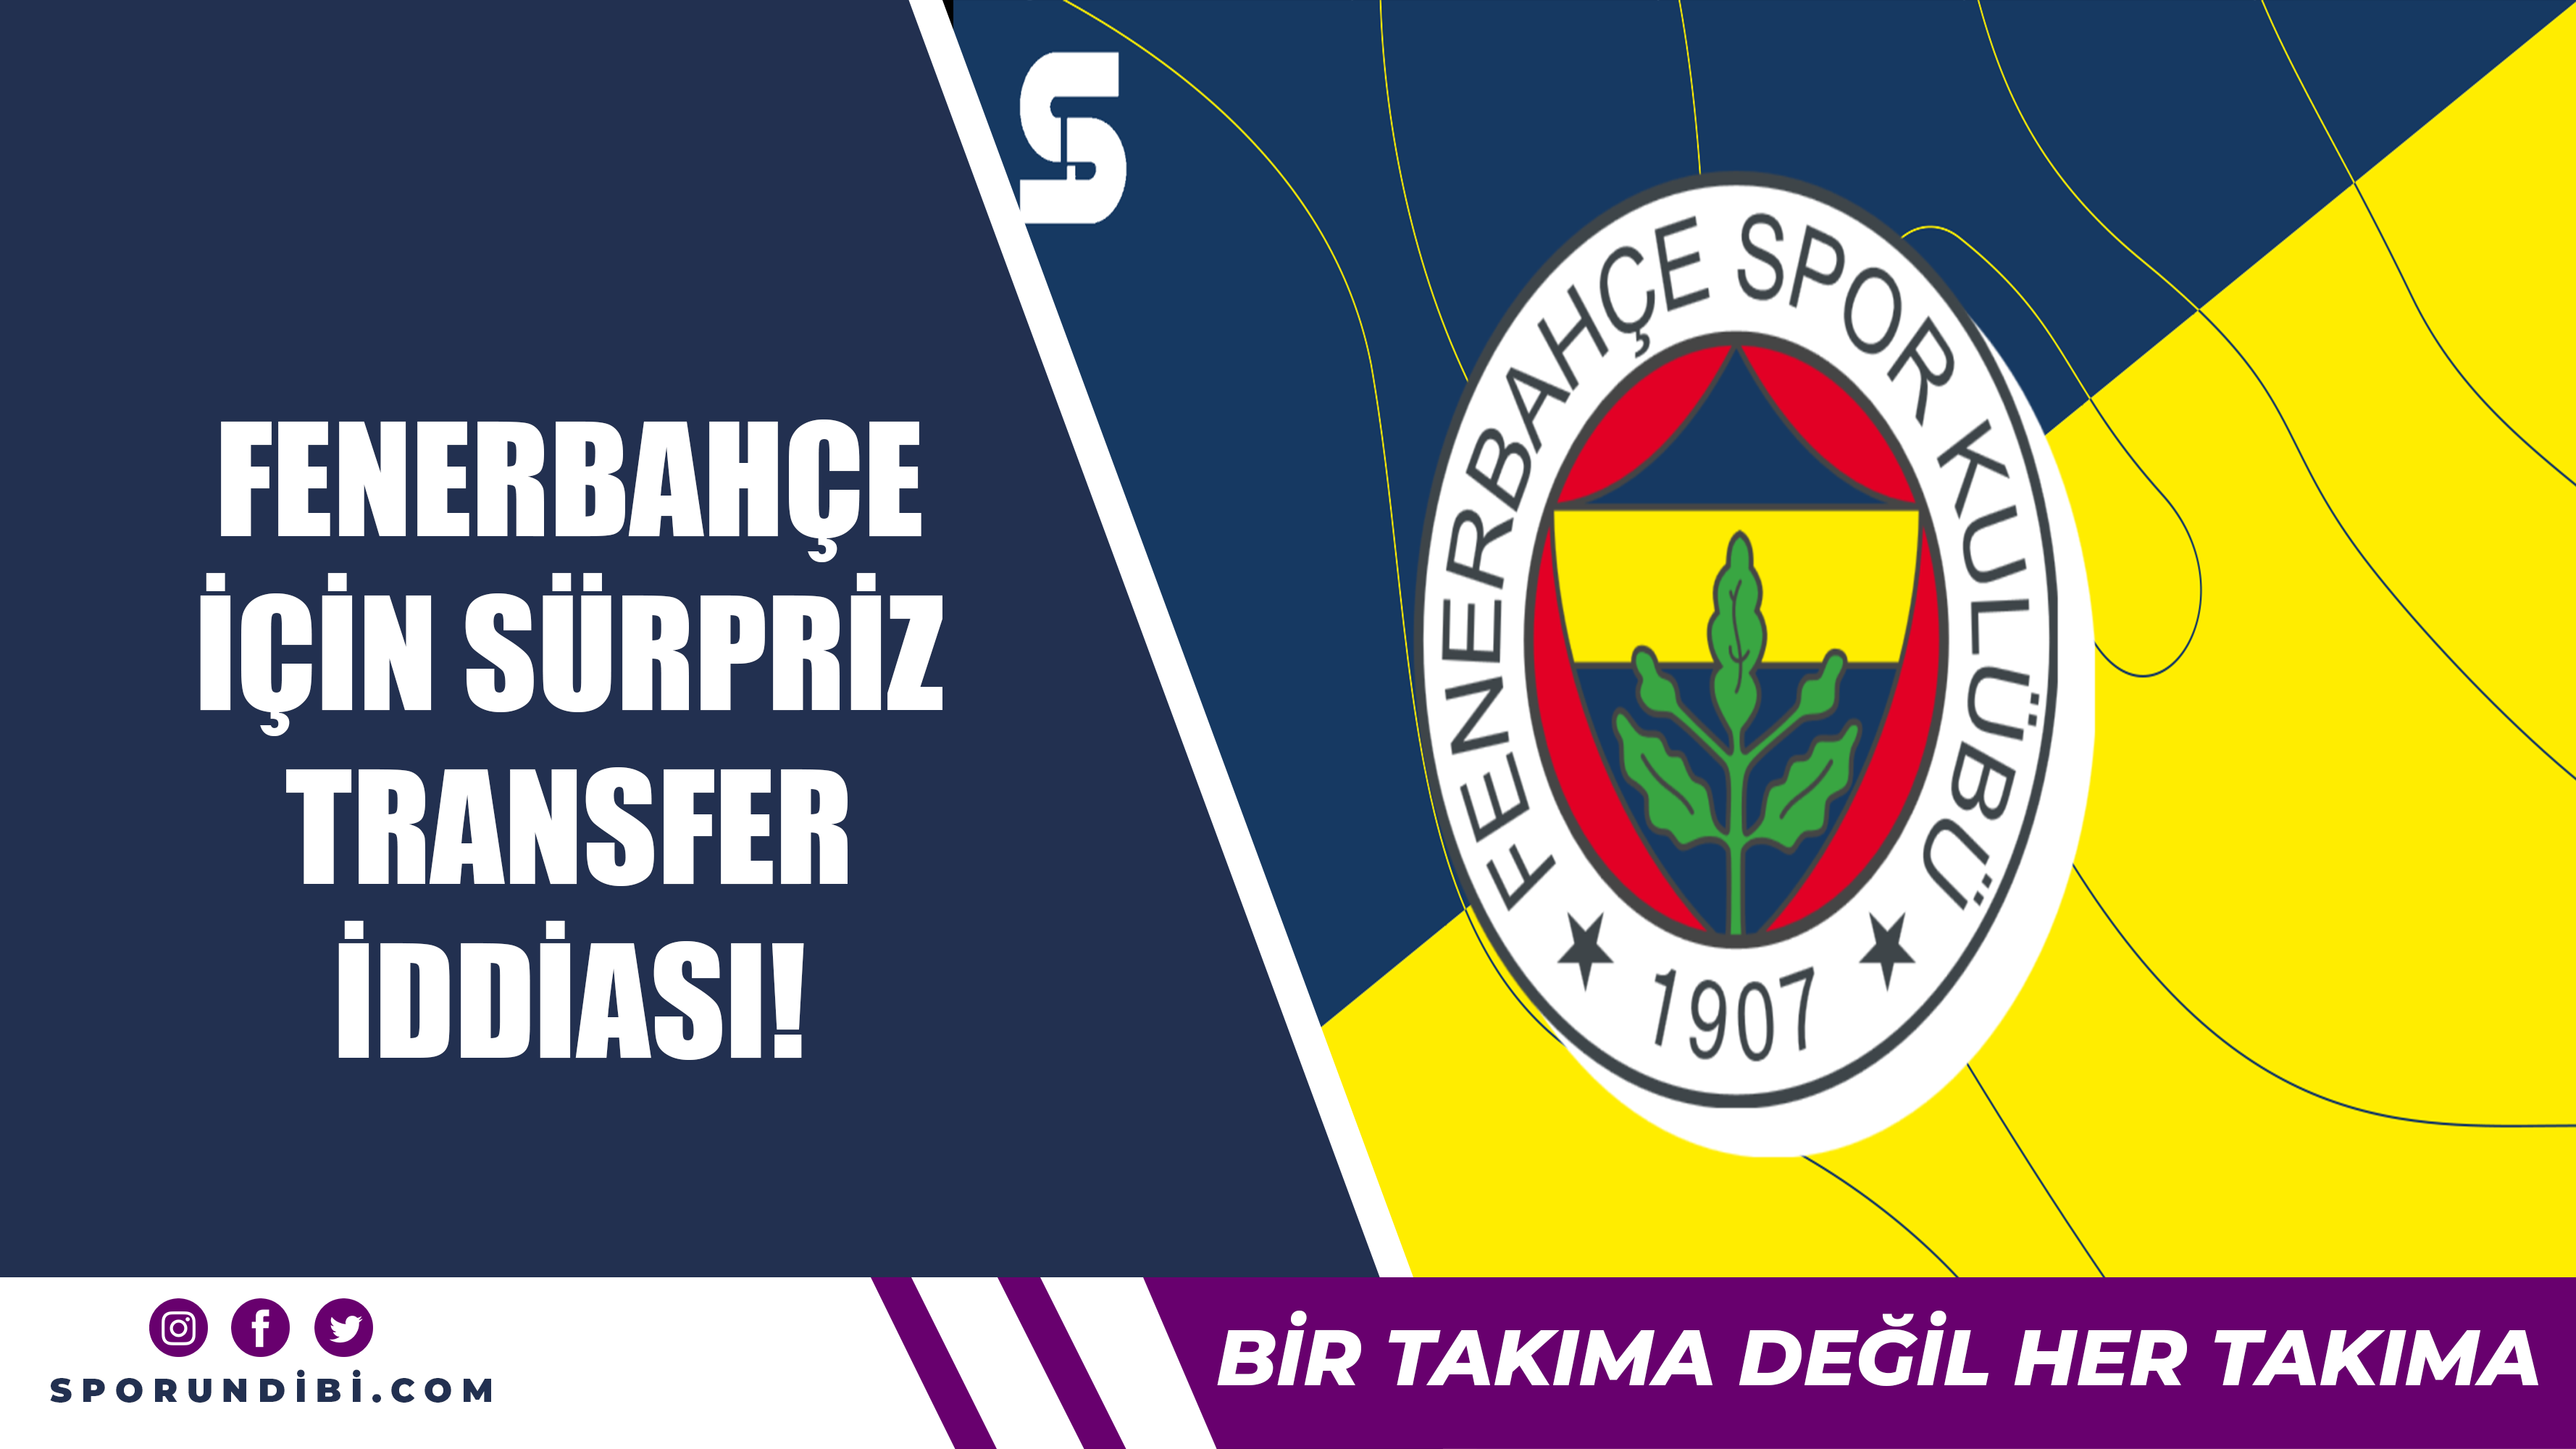 Fenerbahçe için sürpriz transfer iddiası!